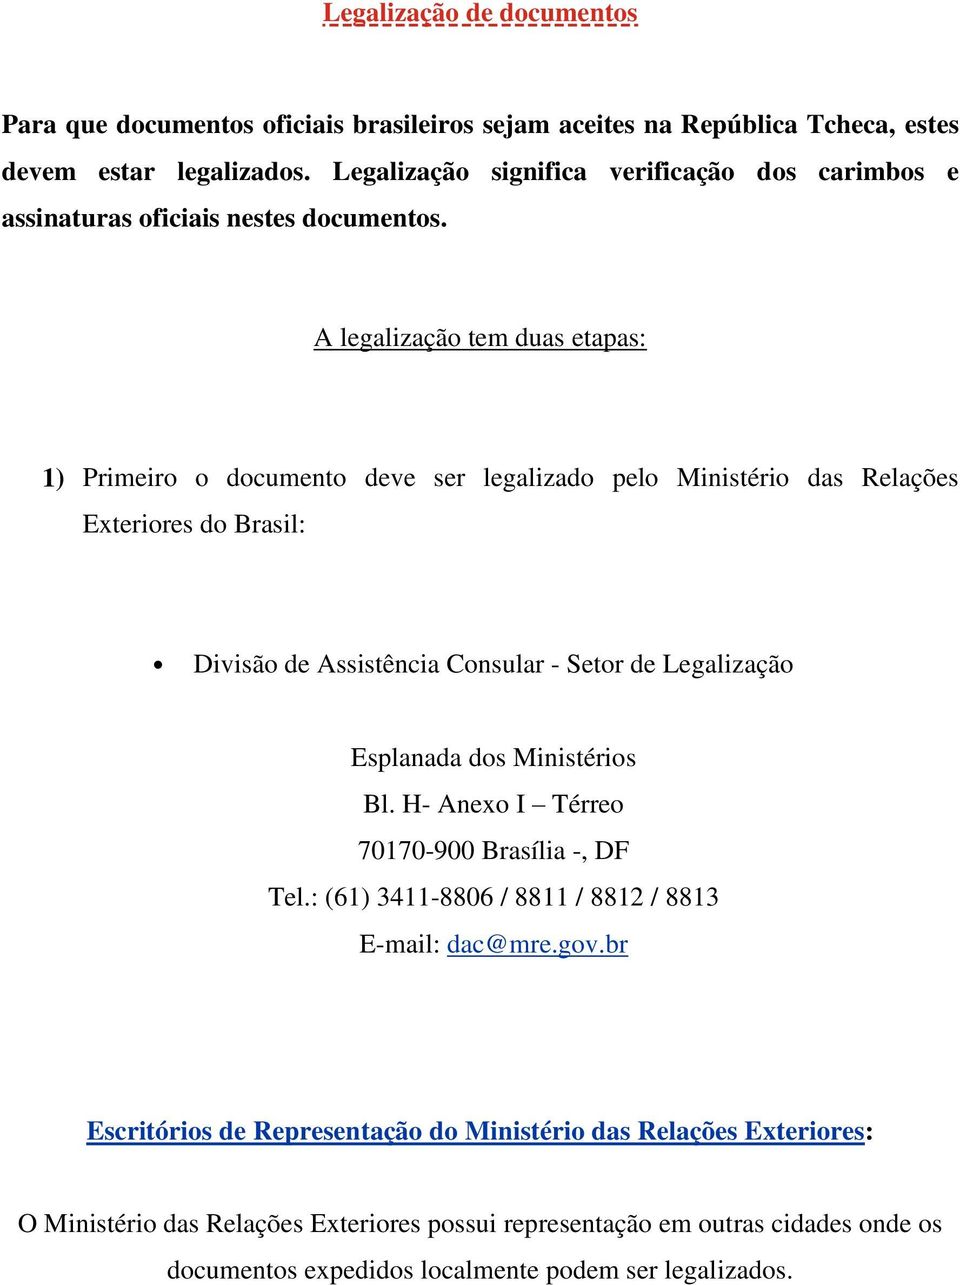 A legalização tem duas etapas: 1) Primeiro o documento deve ser legalizado pelo Ministério das Relações Exteriores do Brasil: Divisão de Assistência Consular - Setor de Legalização